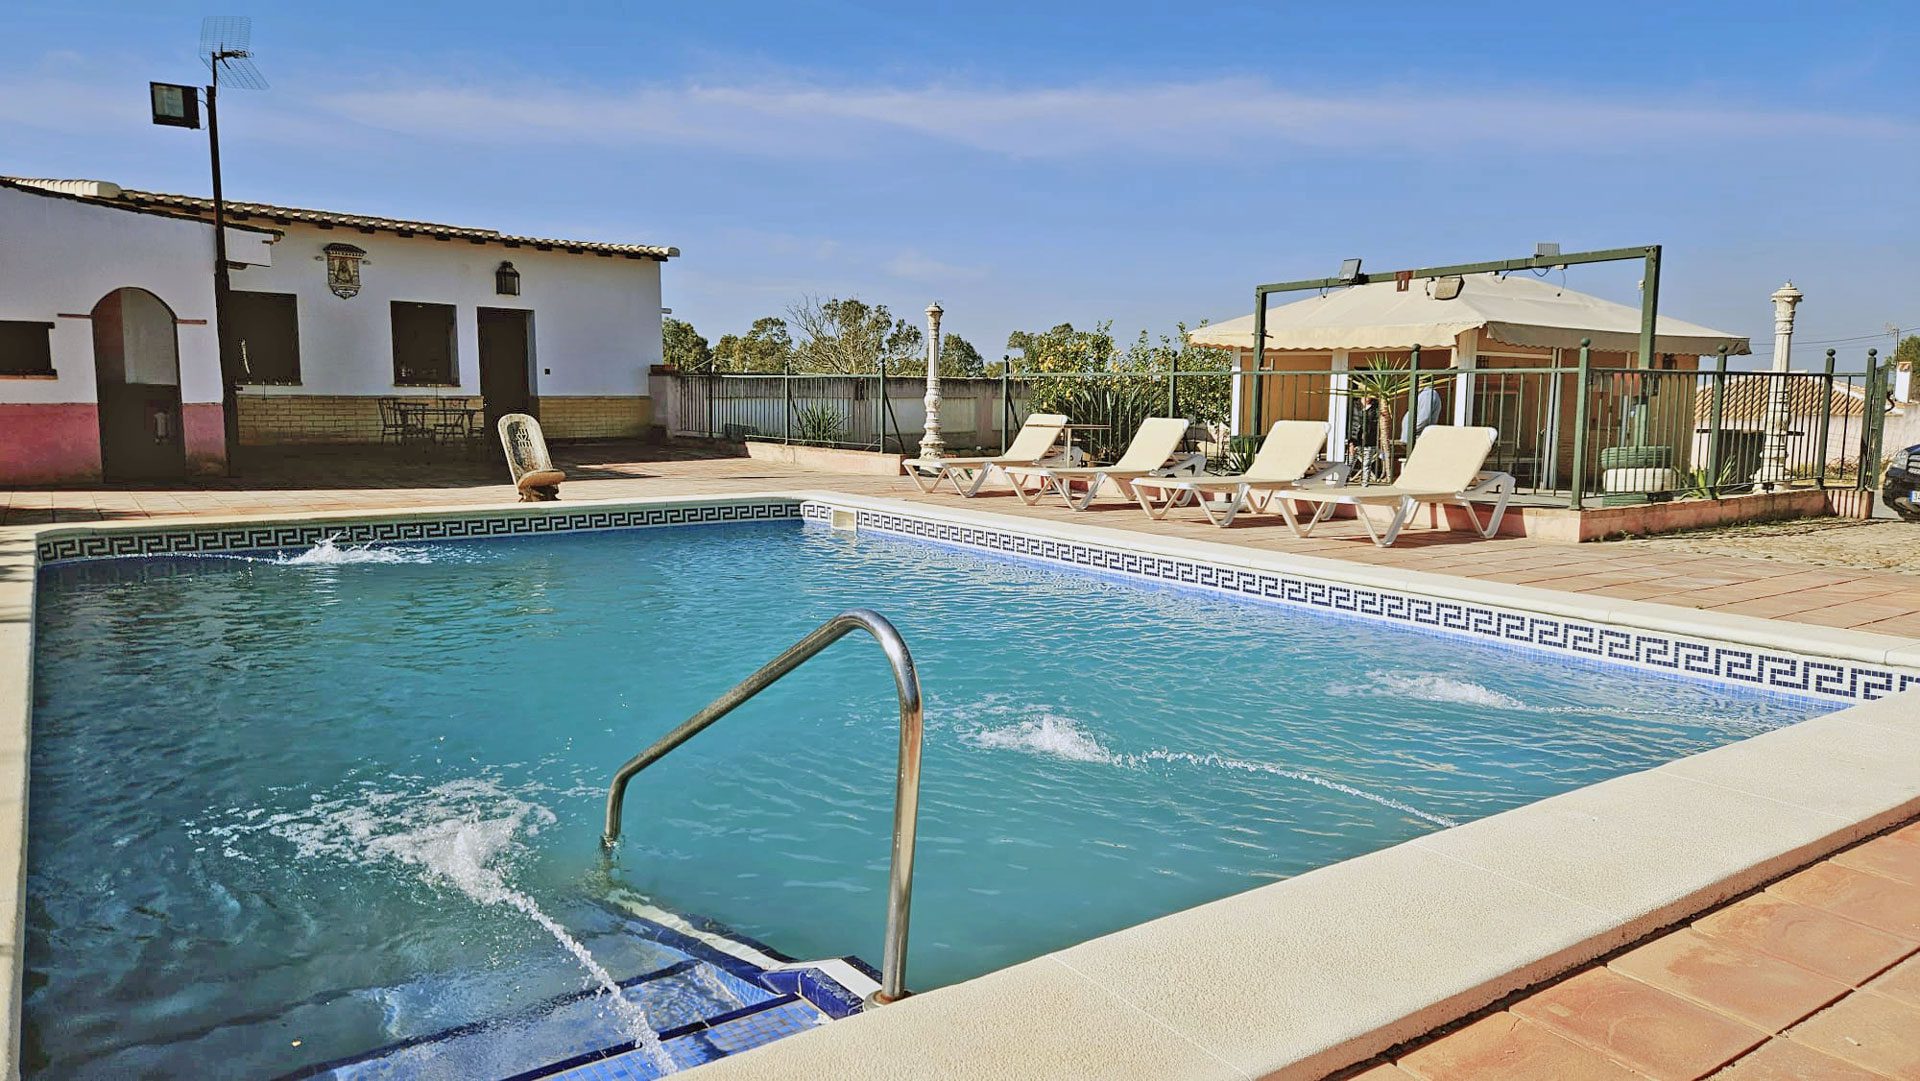 Casa rural con piscina privada en Carmona, Sevilla